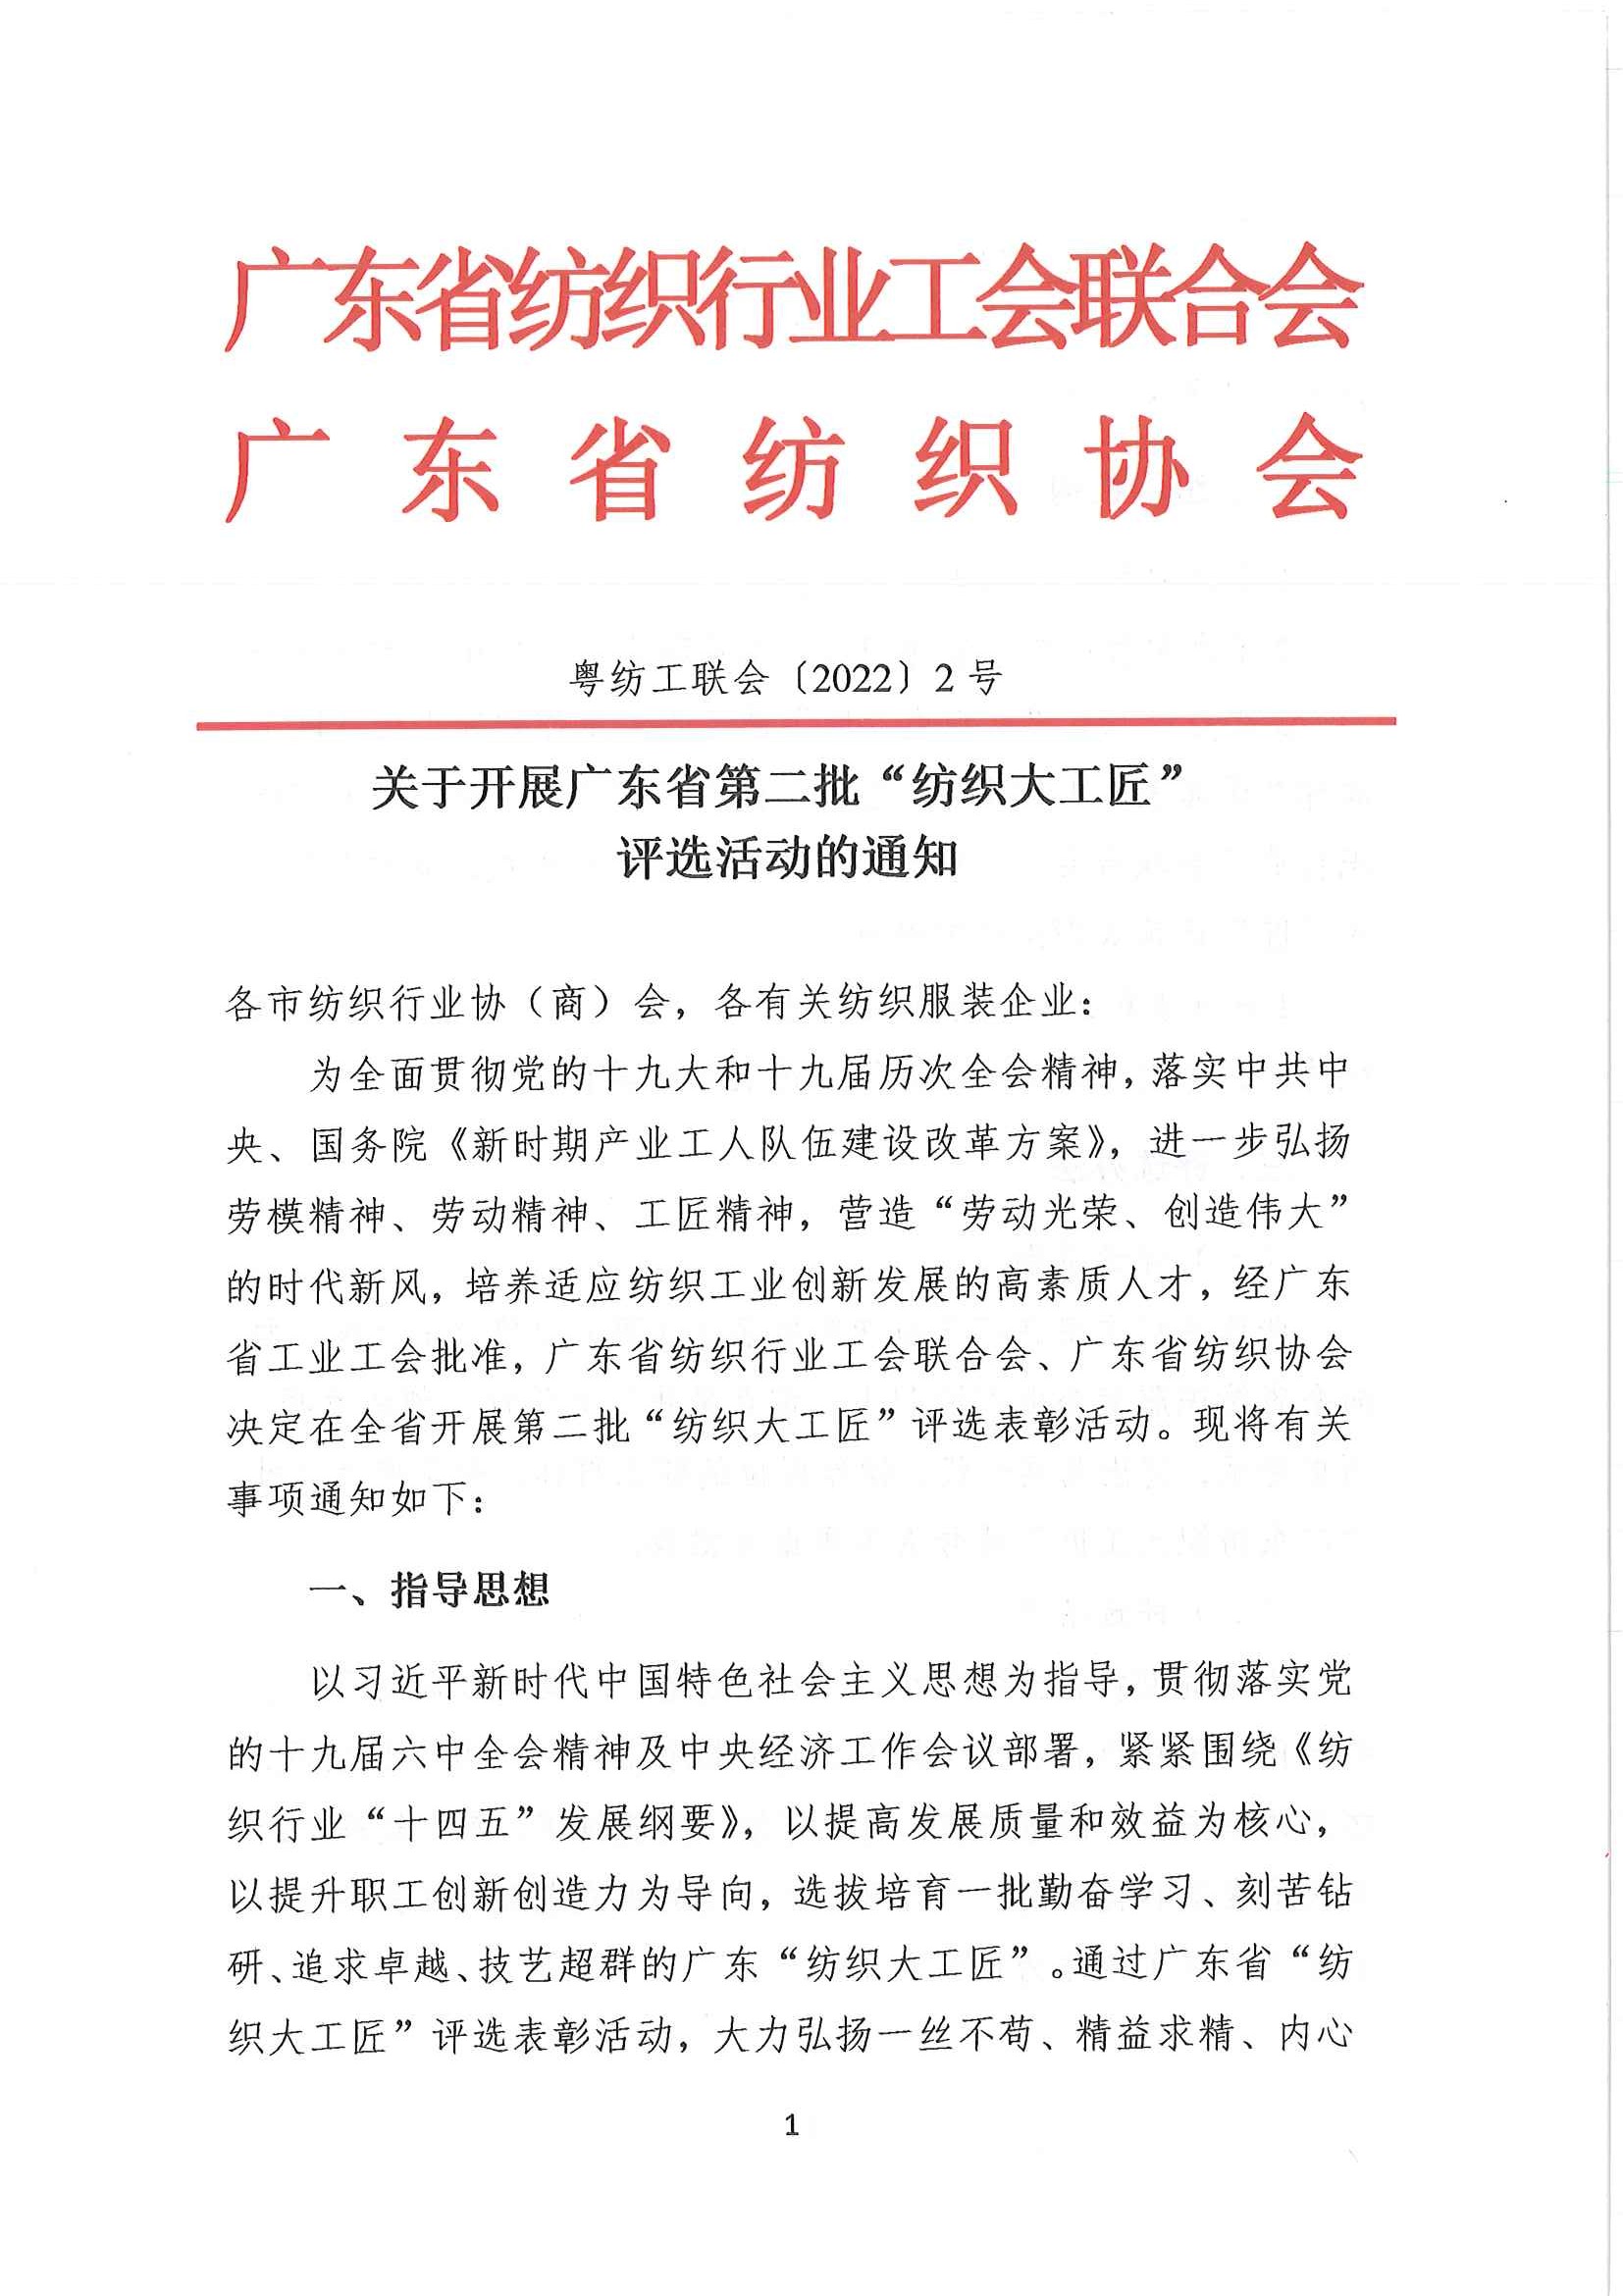 关于开展广东省第二批“纺织大工匠”评选活动的通知_页面_01.jpg